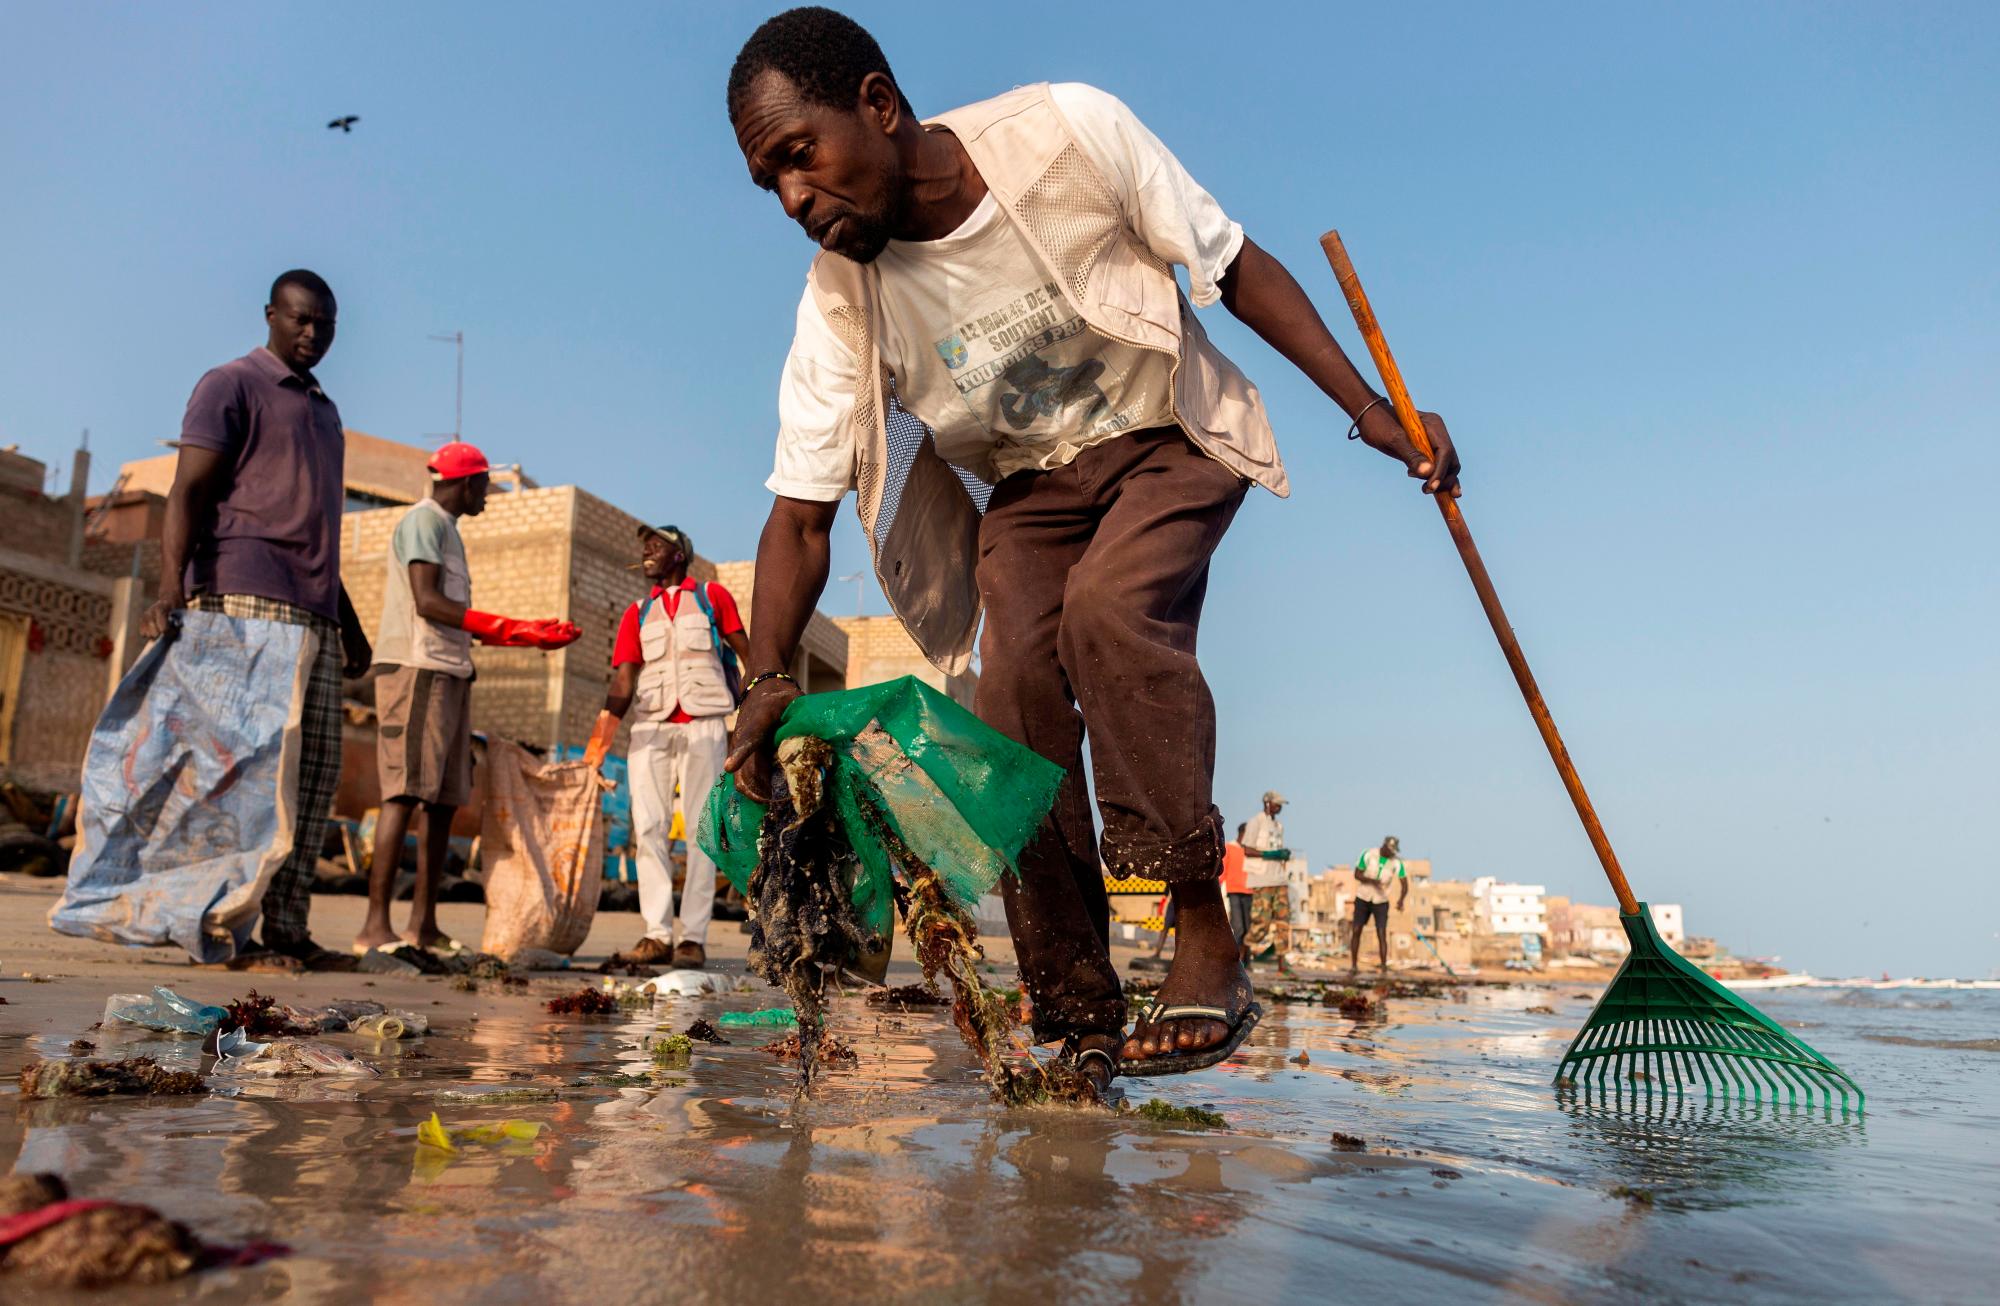 NGOR (SENEGAL), 12/03/2019.- Voluntarios senegaleses limpian la playa de la aldea de Ngor en Dakar, Senegal. El país africano desecha cada año decenas de miles de toneladas de plástico que acaba en el fondo del océano. Un problema que no solo afecta a su población costera, sino también a su economía. Debido a la falta de mecanismos de gestión de estos residuos por parte de los ayuntamientos, las comunidades han realizado sus propias limpiezas en algunas aldeas. Los ecologistas piden un cambio de política respecto al uso del plástico por parte del gobierno de Senegal. EFE/ Nic Bothma